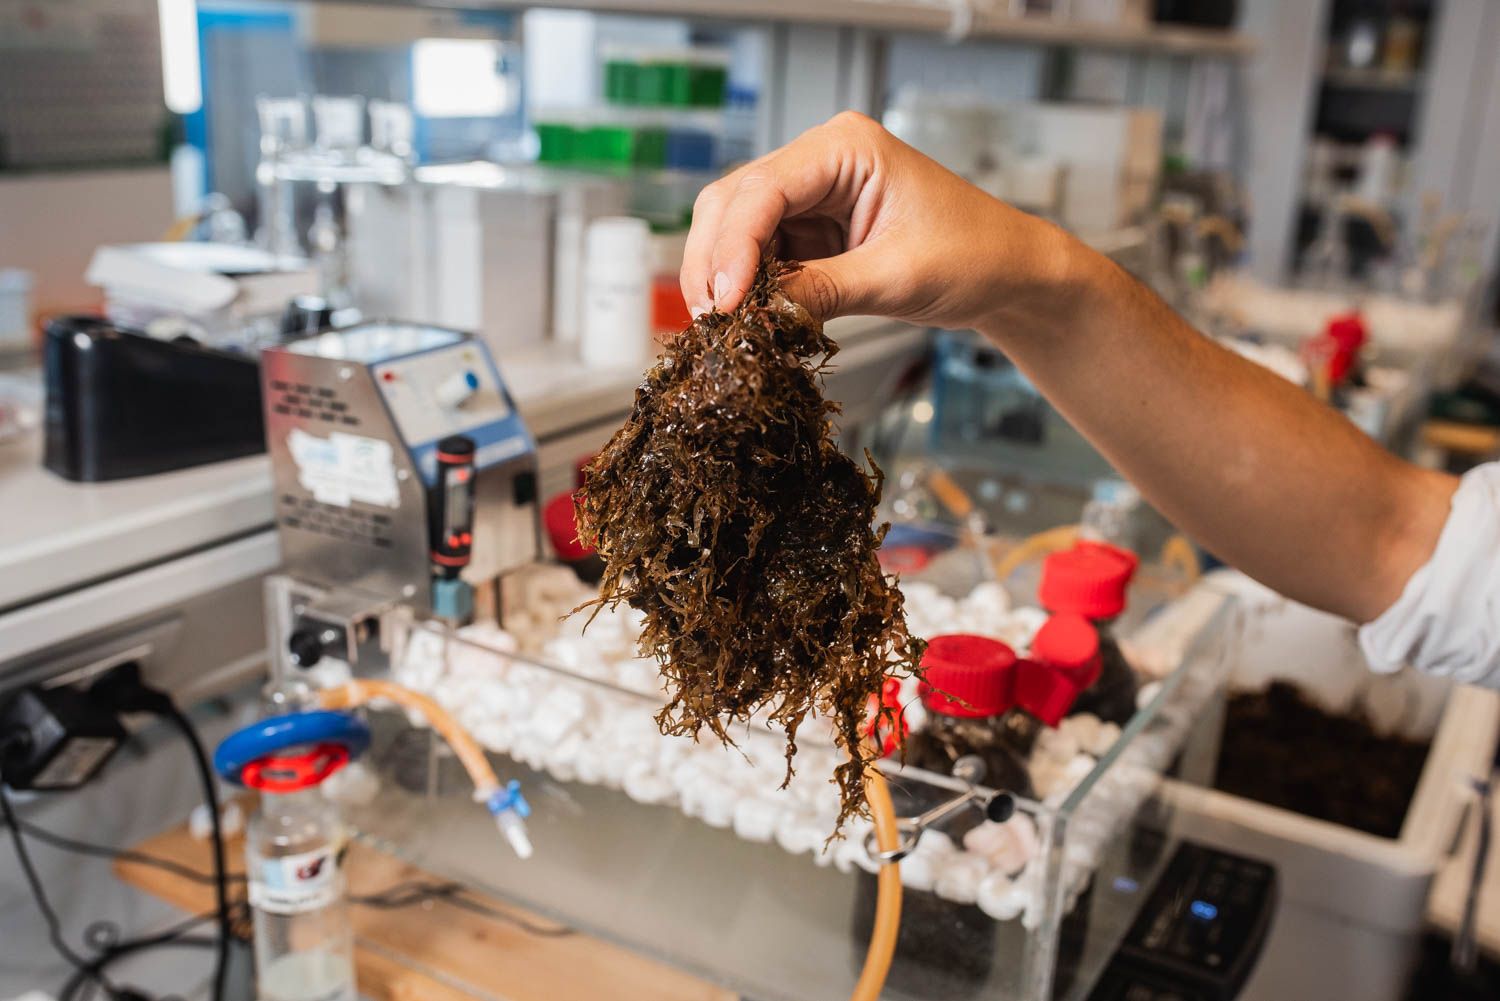 El investigador David Lama sostiene un ejemplar de alga asiática en su laboratorio en el CSIC, en Sevilla.